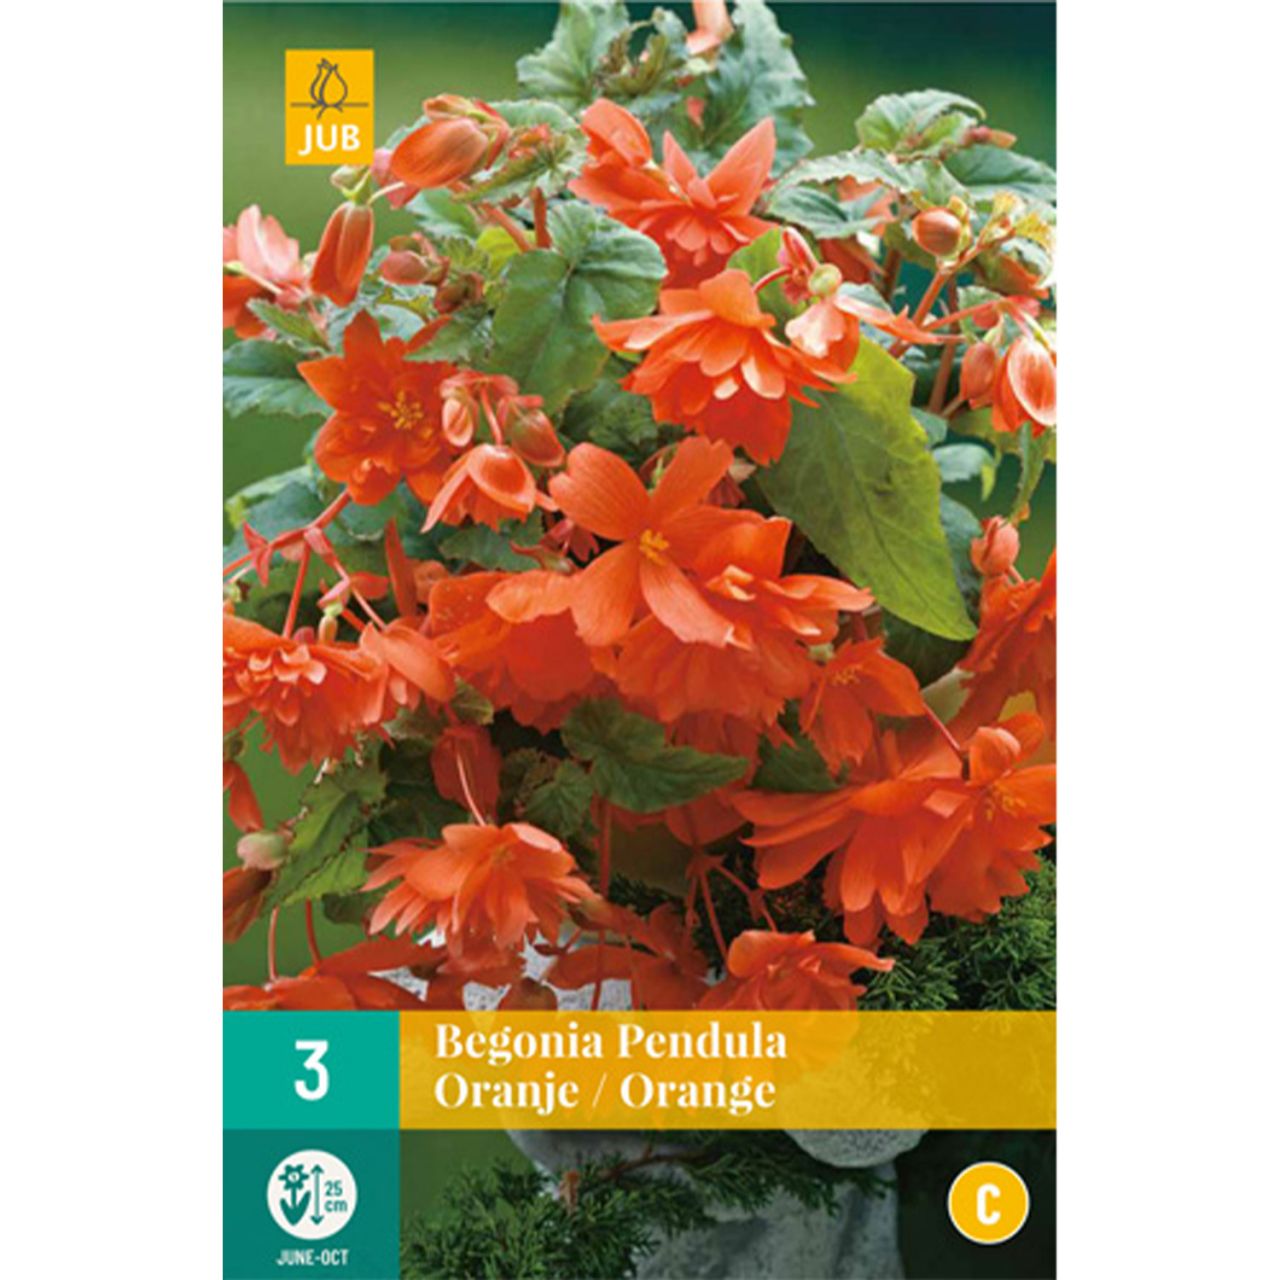 Kategorie <b>Frühlings-Blumenzwiebeln </b> - Hängebegonie 'Pendula Orange' - 3 Stück - Begonia